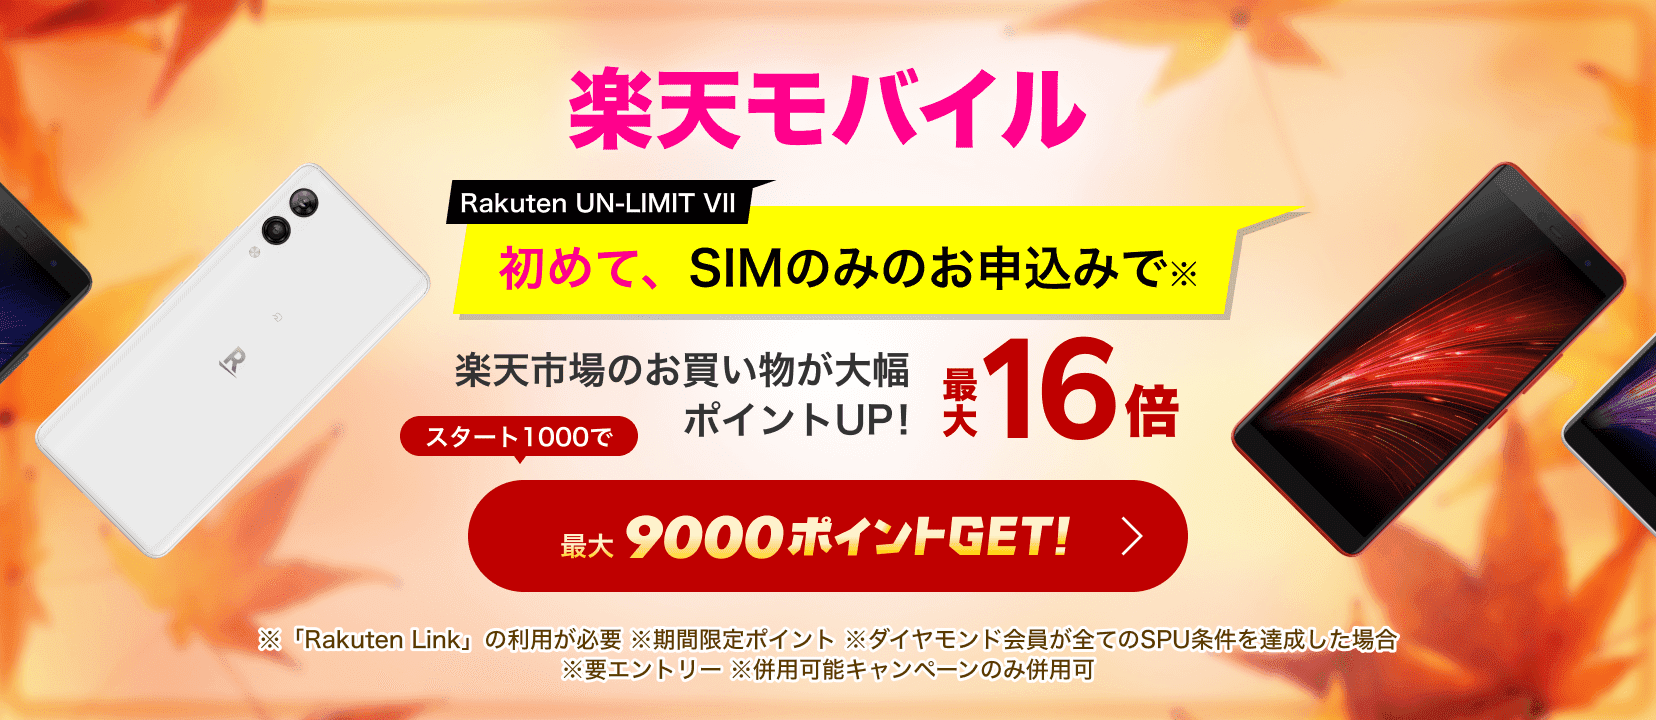 楽天モバイル Rakuten UN-LIMIT VI 初めてのお申し込みで※ 最大6000ポイントGET!さっそくチェック ※「Rakuten Link」の利用が必要です。 ※期間限定ポイントでの進呈となります。